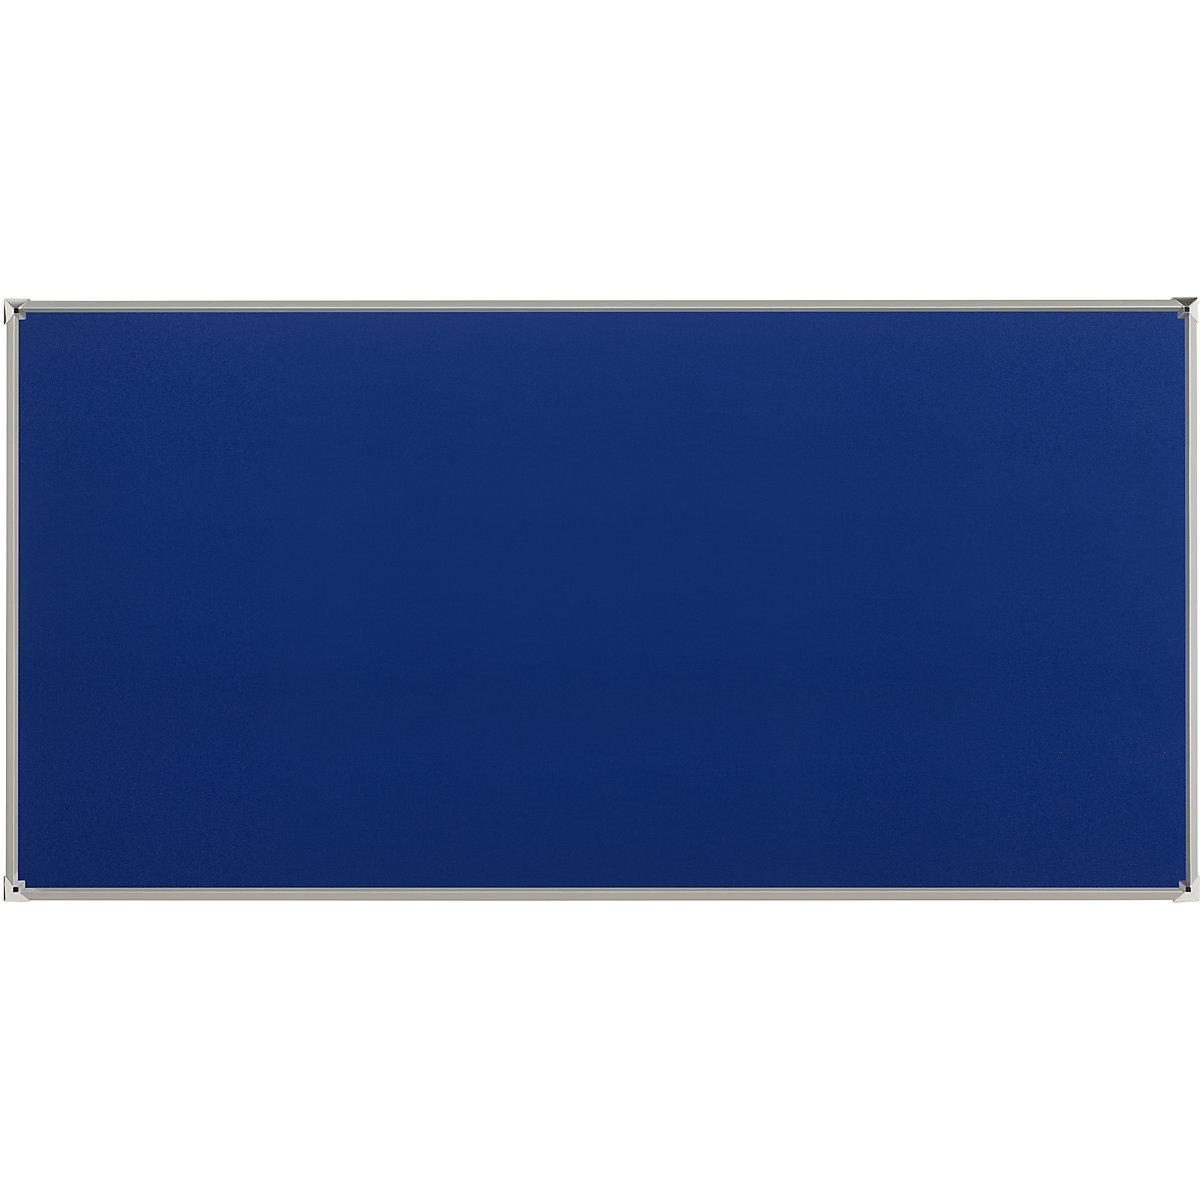 Jelölőtűs fal alumínium kerettel – eurokraft pro, kék szövetkárpit, szé x ma 2400 x 1200 mm-3